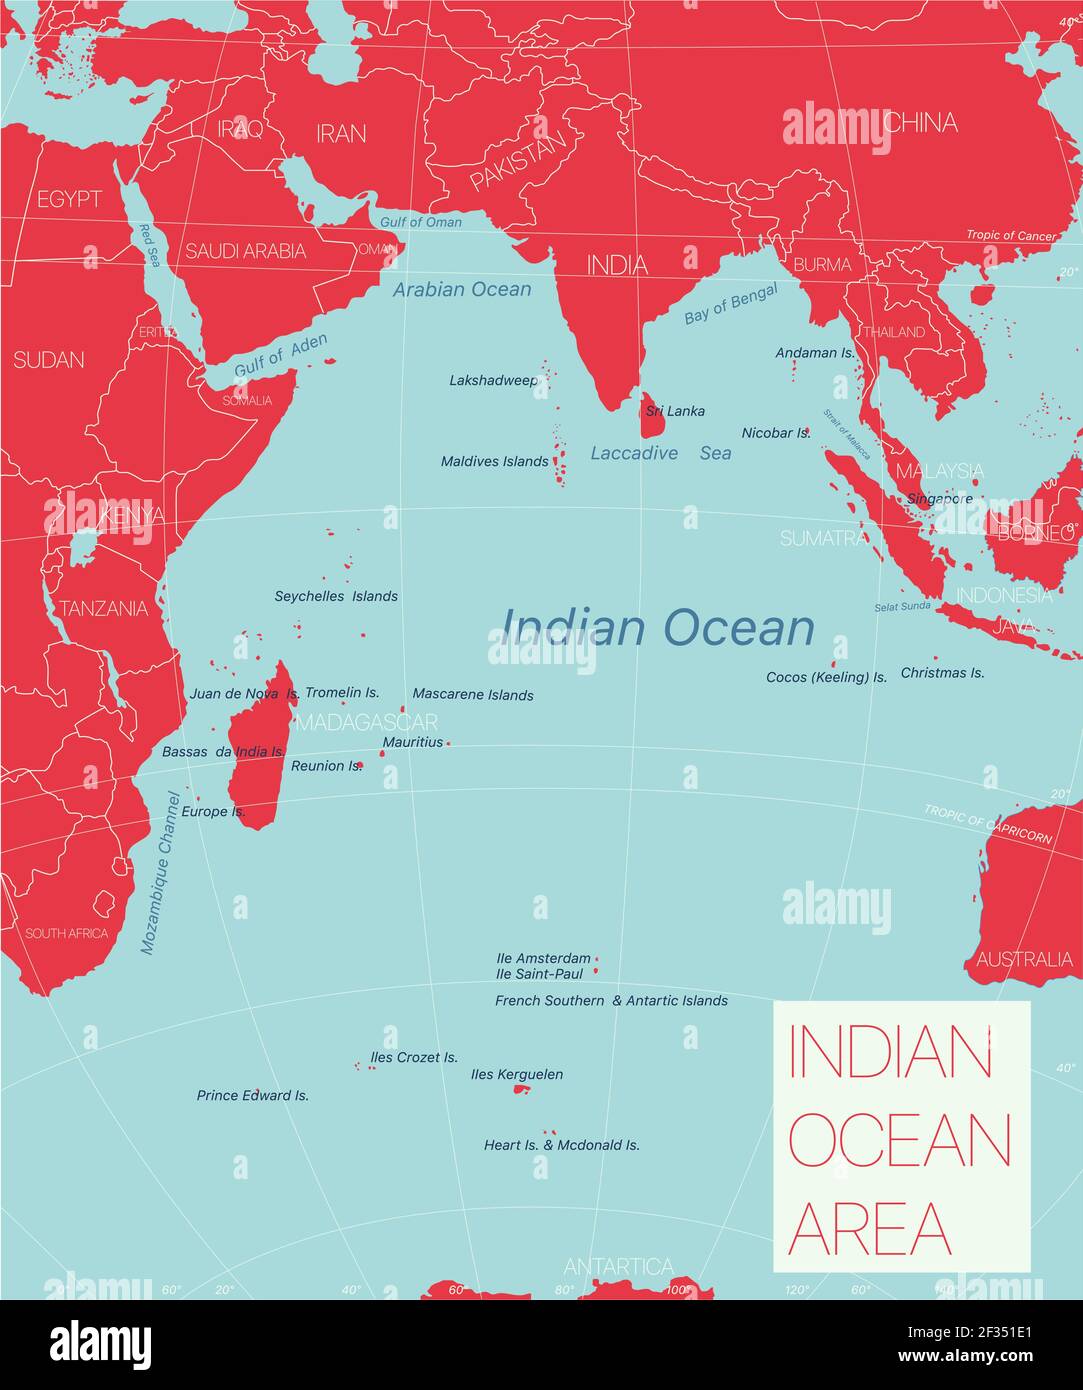 Région de l'océan Indien carte détaillée modifiable avec régions villes et sites géographiques. Fichier vectoriel EPS-10 Illustration de Vecteur